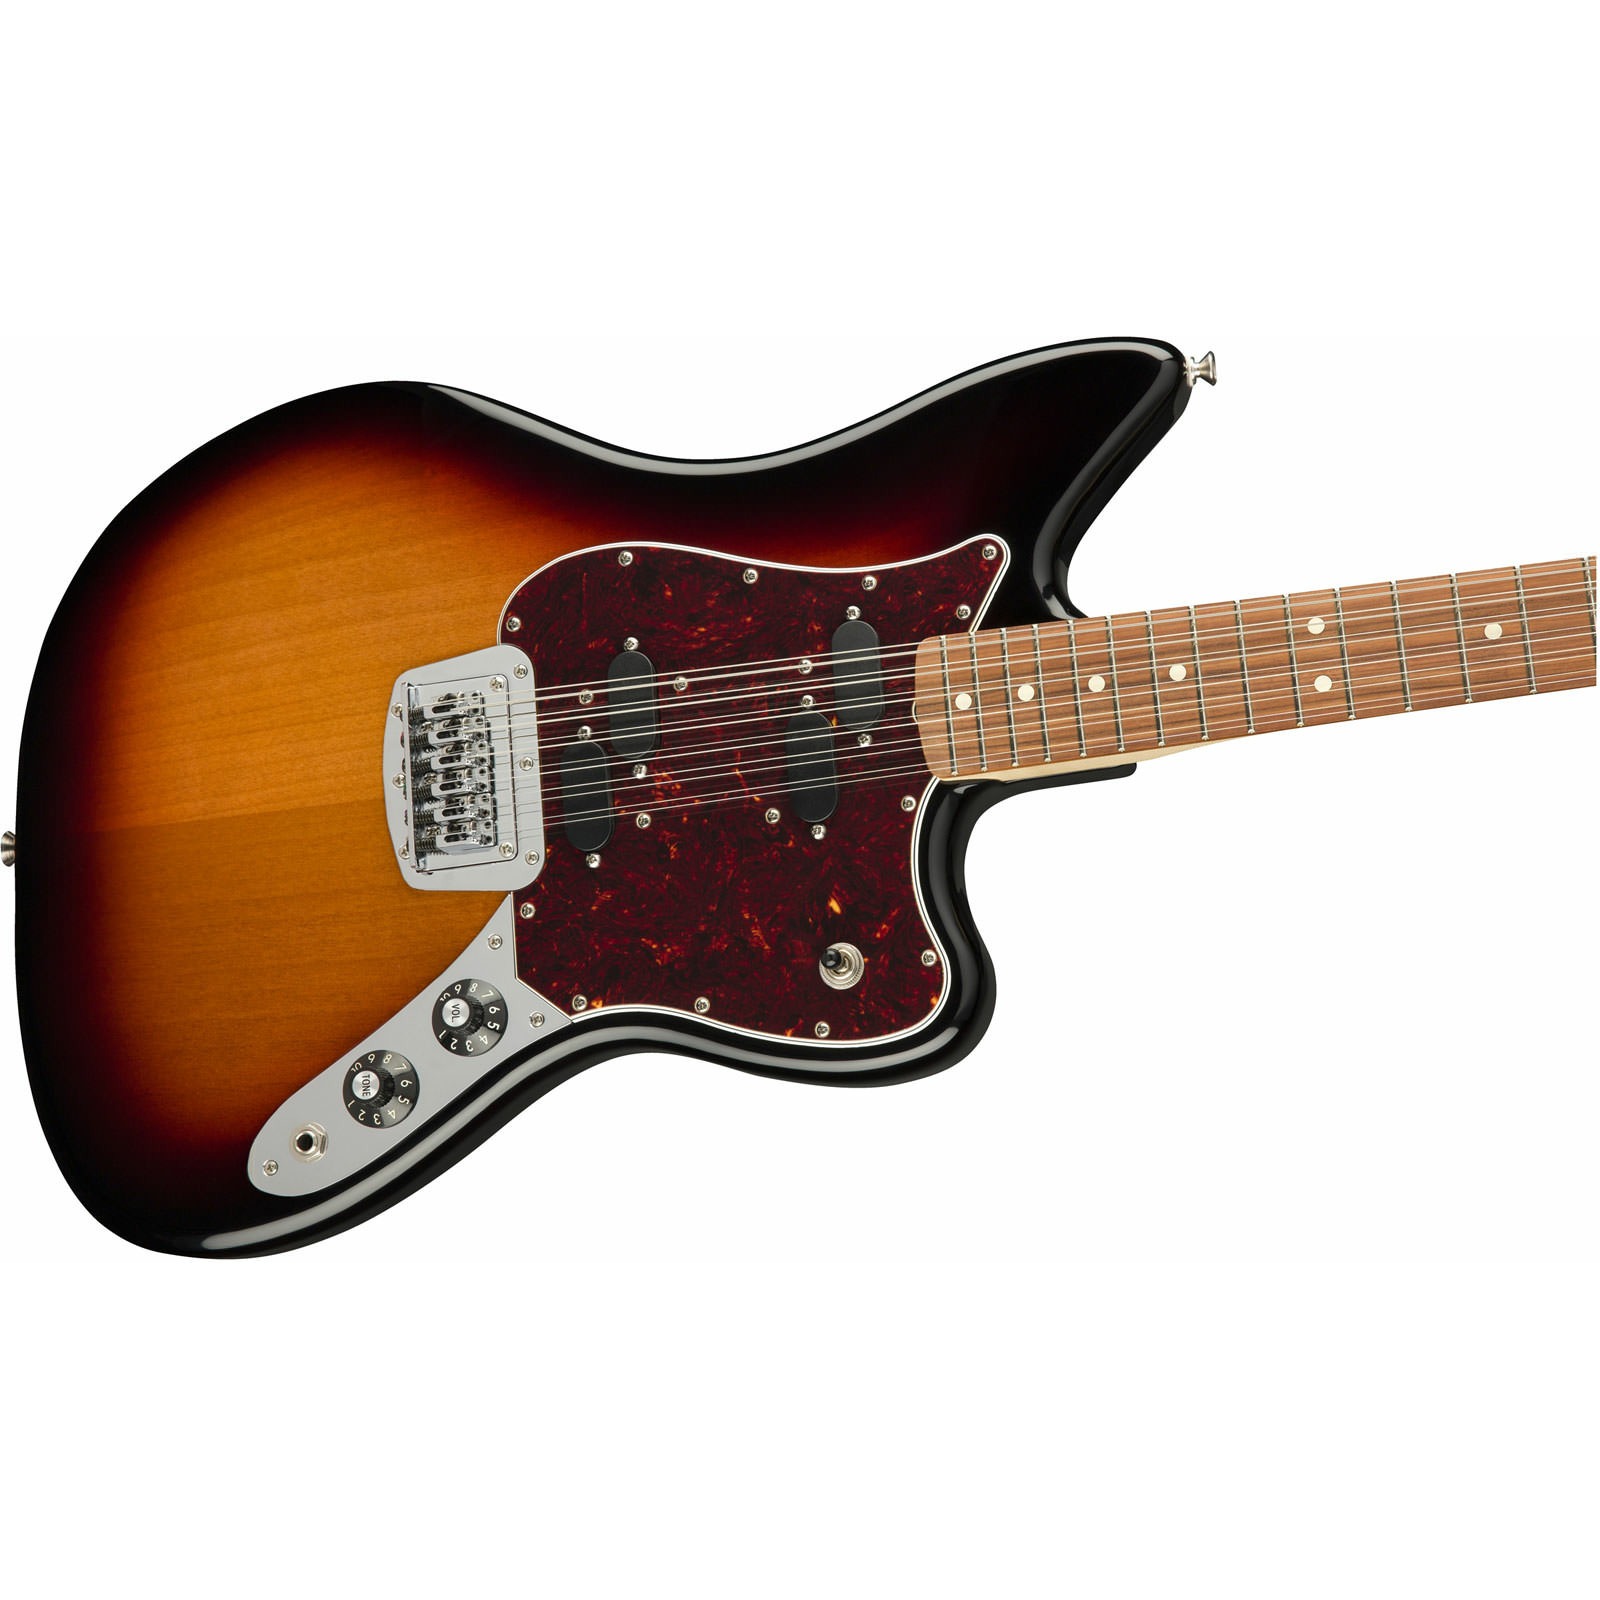 Электрогитара 12. Fender Electric XII Sunburst. Fender 12 Electric. 12 Струнная электрогитара Fender. Гитара Фендер 12 струн.